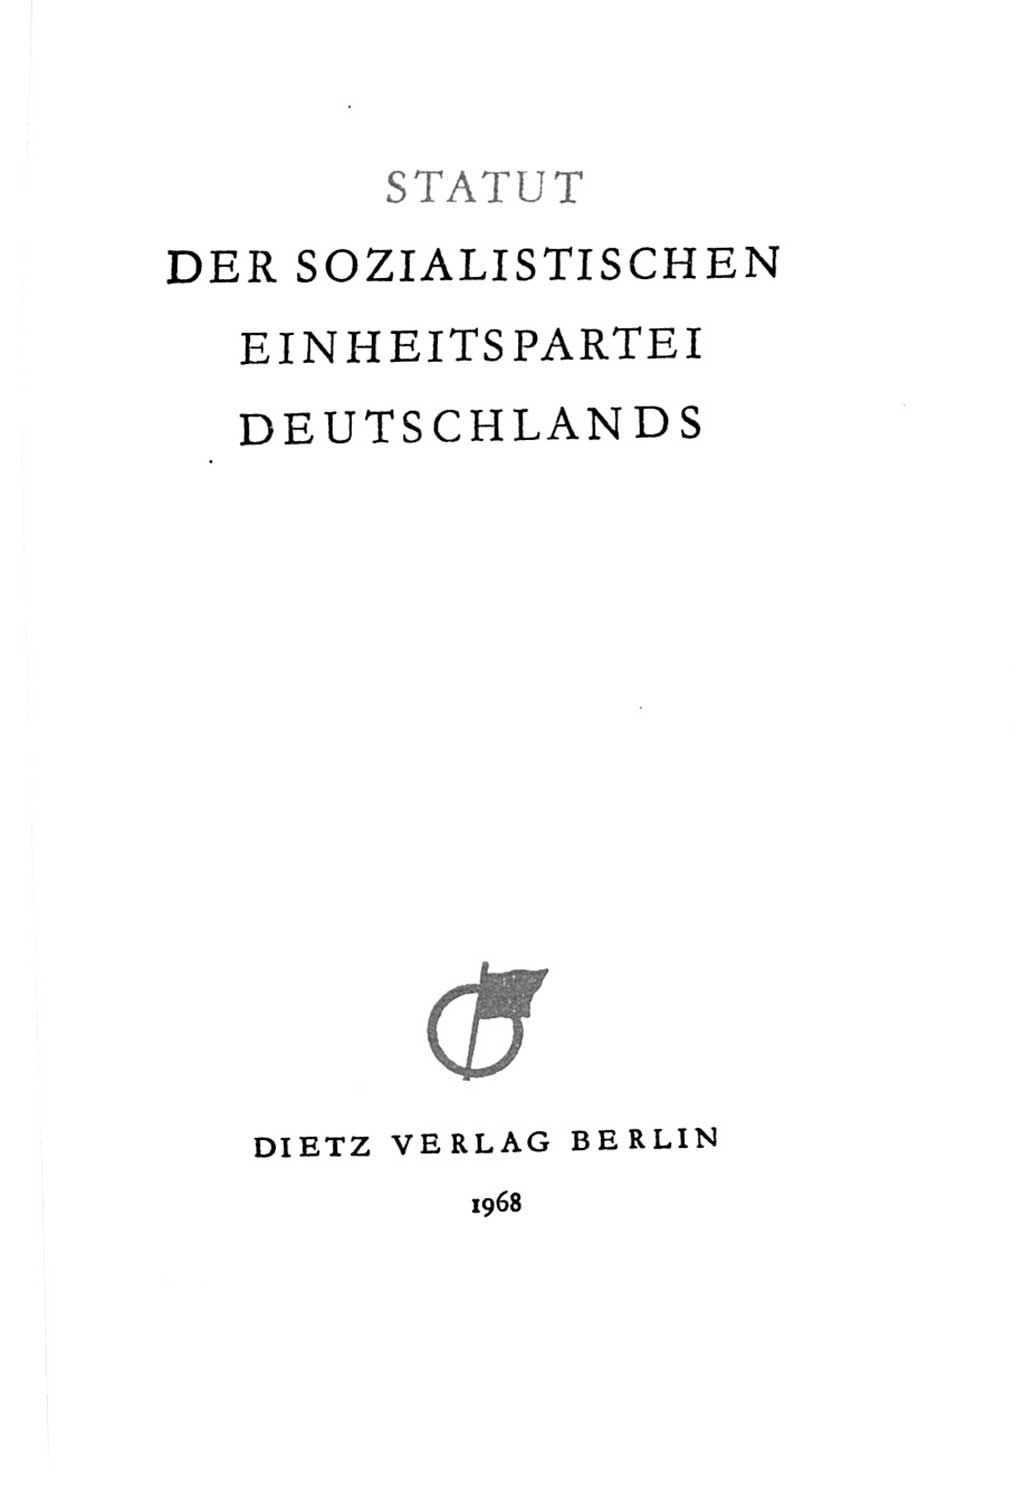 Statut der Sozialistischen Einheitspartei Deutschlands (SED) 1967, Seite 3 (St. SED DDR 1967, S. 3)